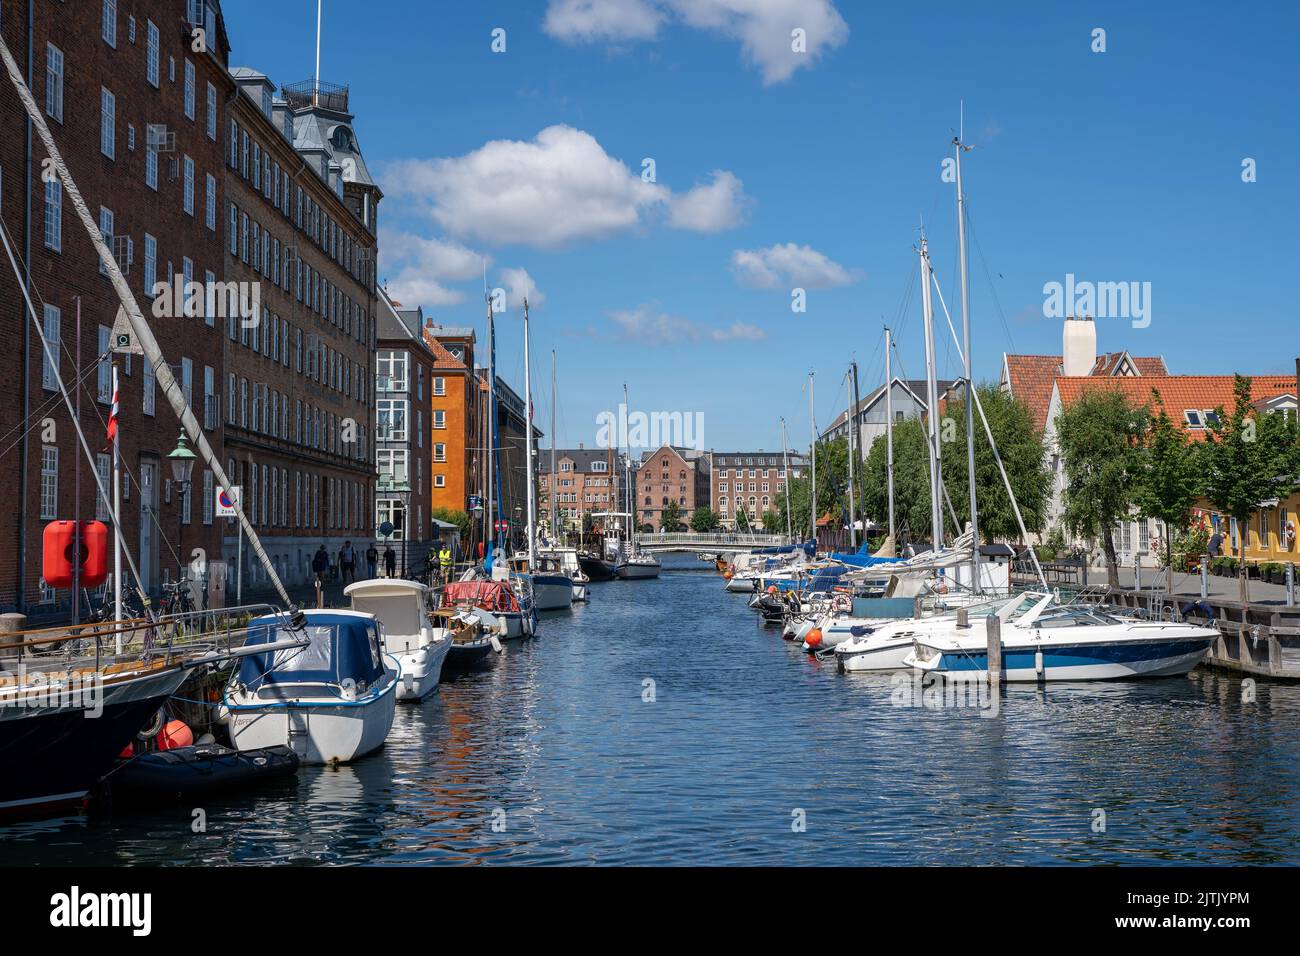 Christianshavn District in Copenhagen, Denmark Stock Photo